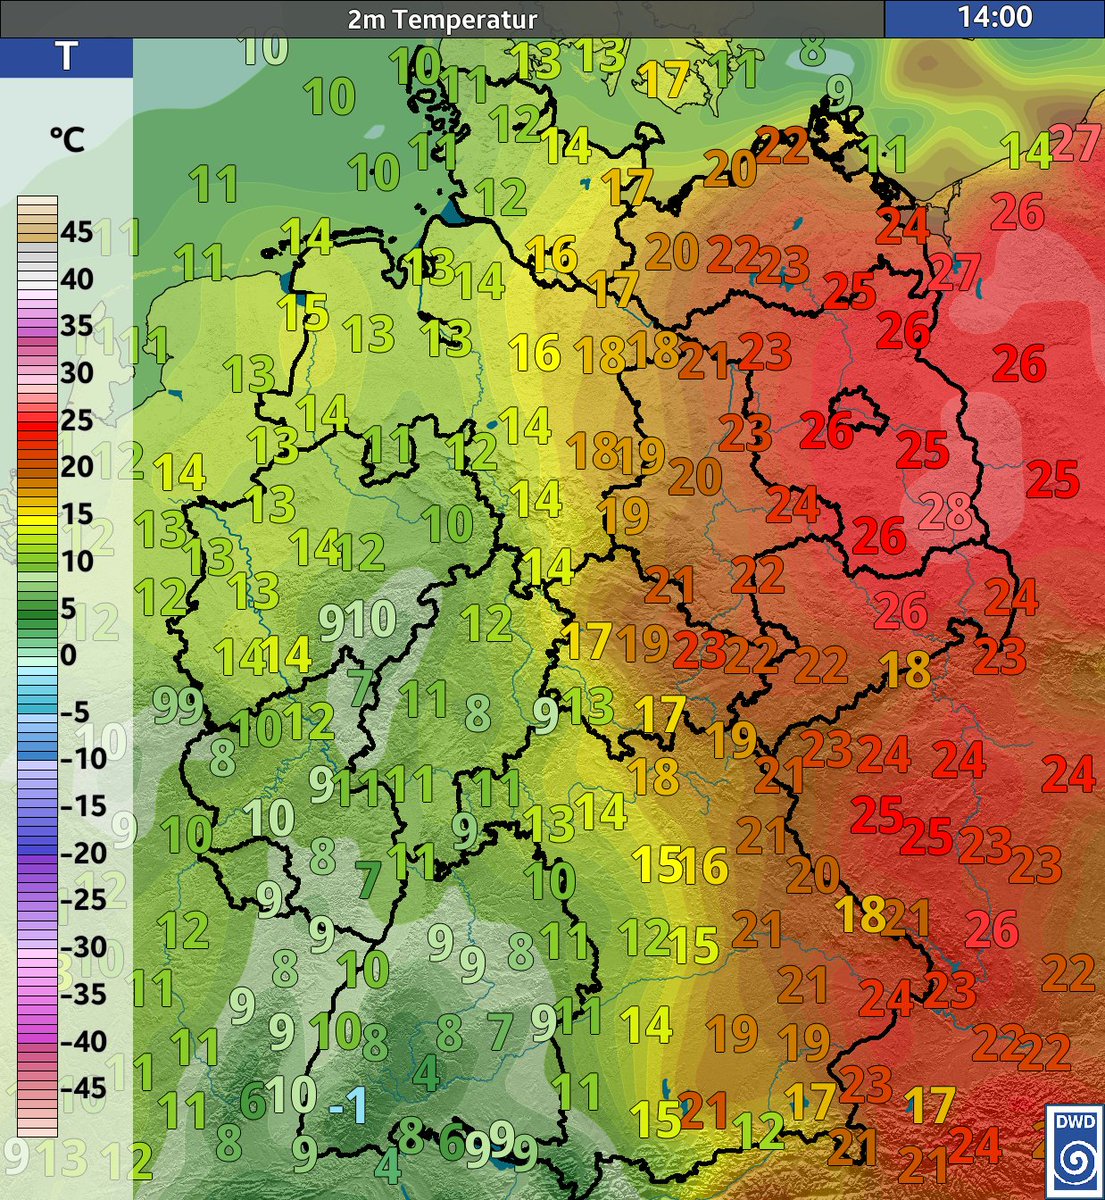 Das heutige Thema des Tages dwd.de/DE/wetter/them… beschäftigt sich damit, warum die #Kaltfront nicht mit großem 'Kawumm' über Deutschland hinwegzieht, obwohl die Temperaturdiferenz zwischen West und Ost etwa 20 Grad beträgt. /V